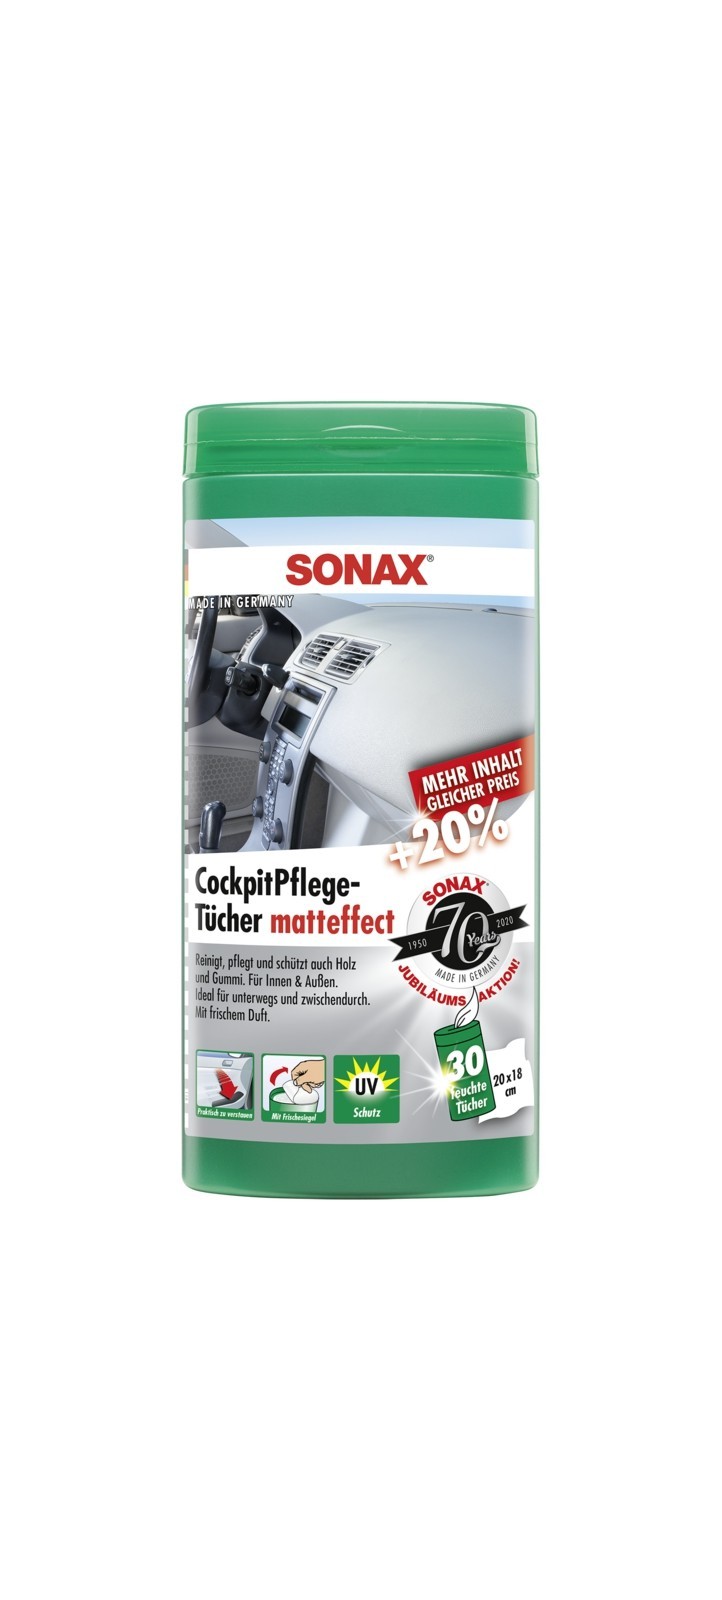 SONAX CockpitPflegeTücher Matteffect ( 25 Stück ), Art.-Nr. 04158410